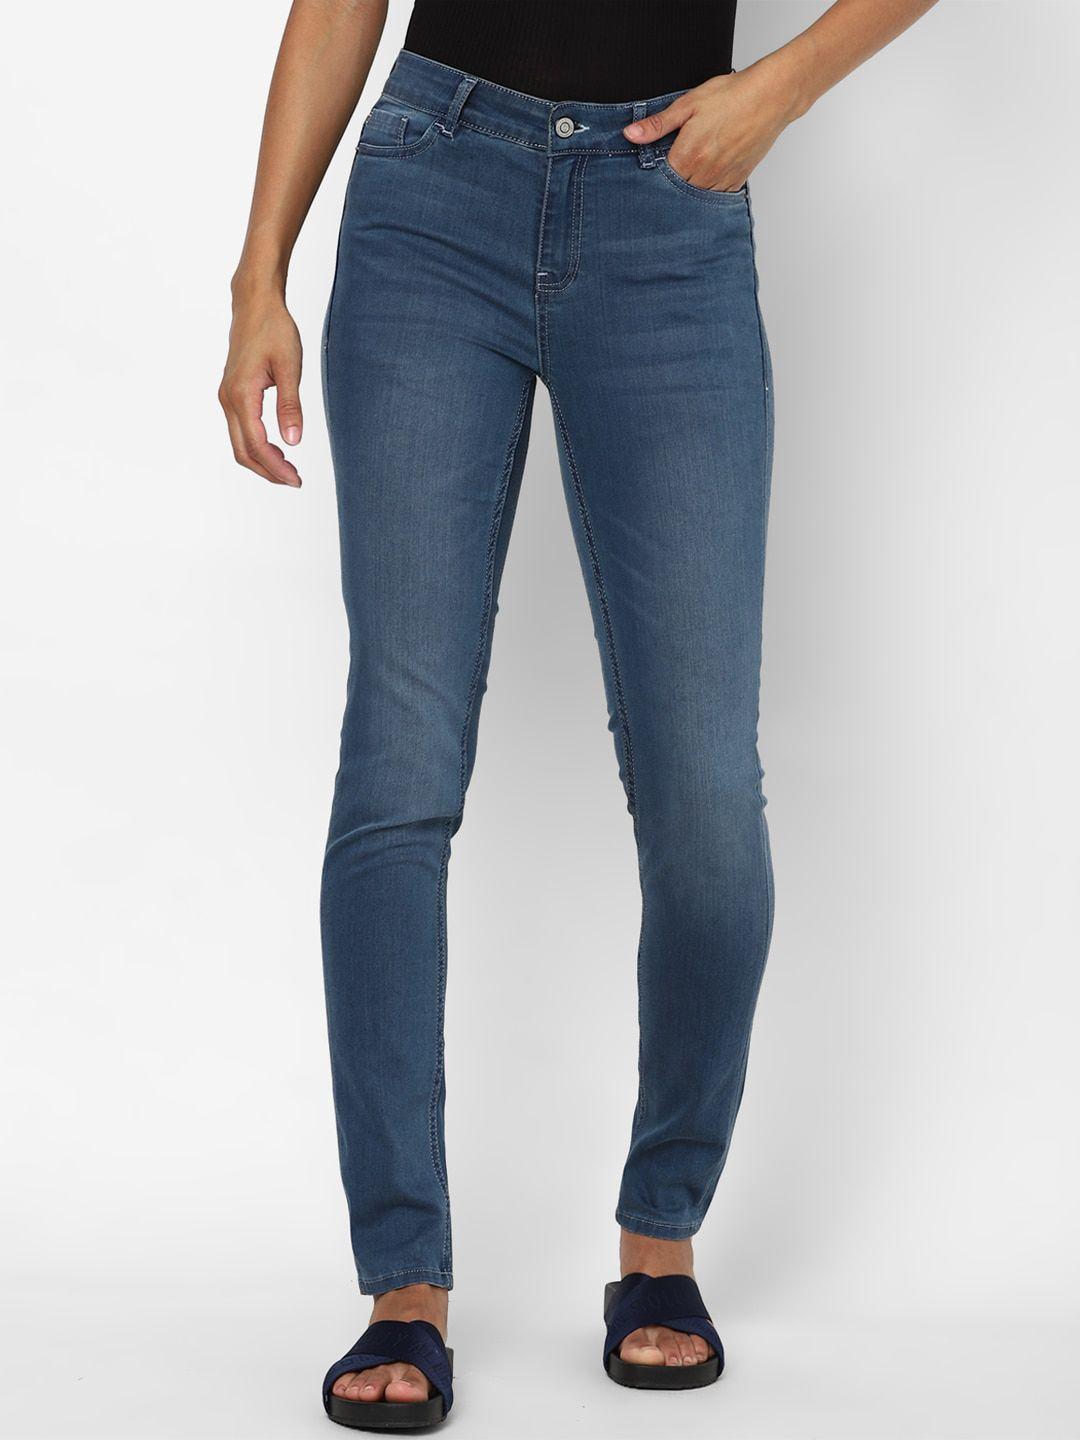 allen solly woman women navy blue slim fit light fade jeans